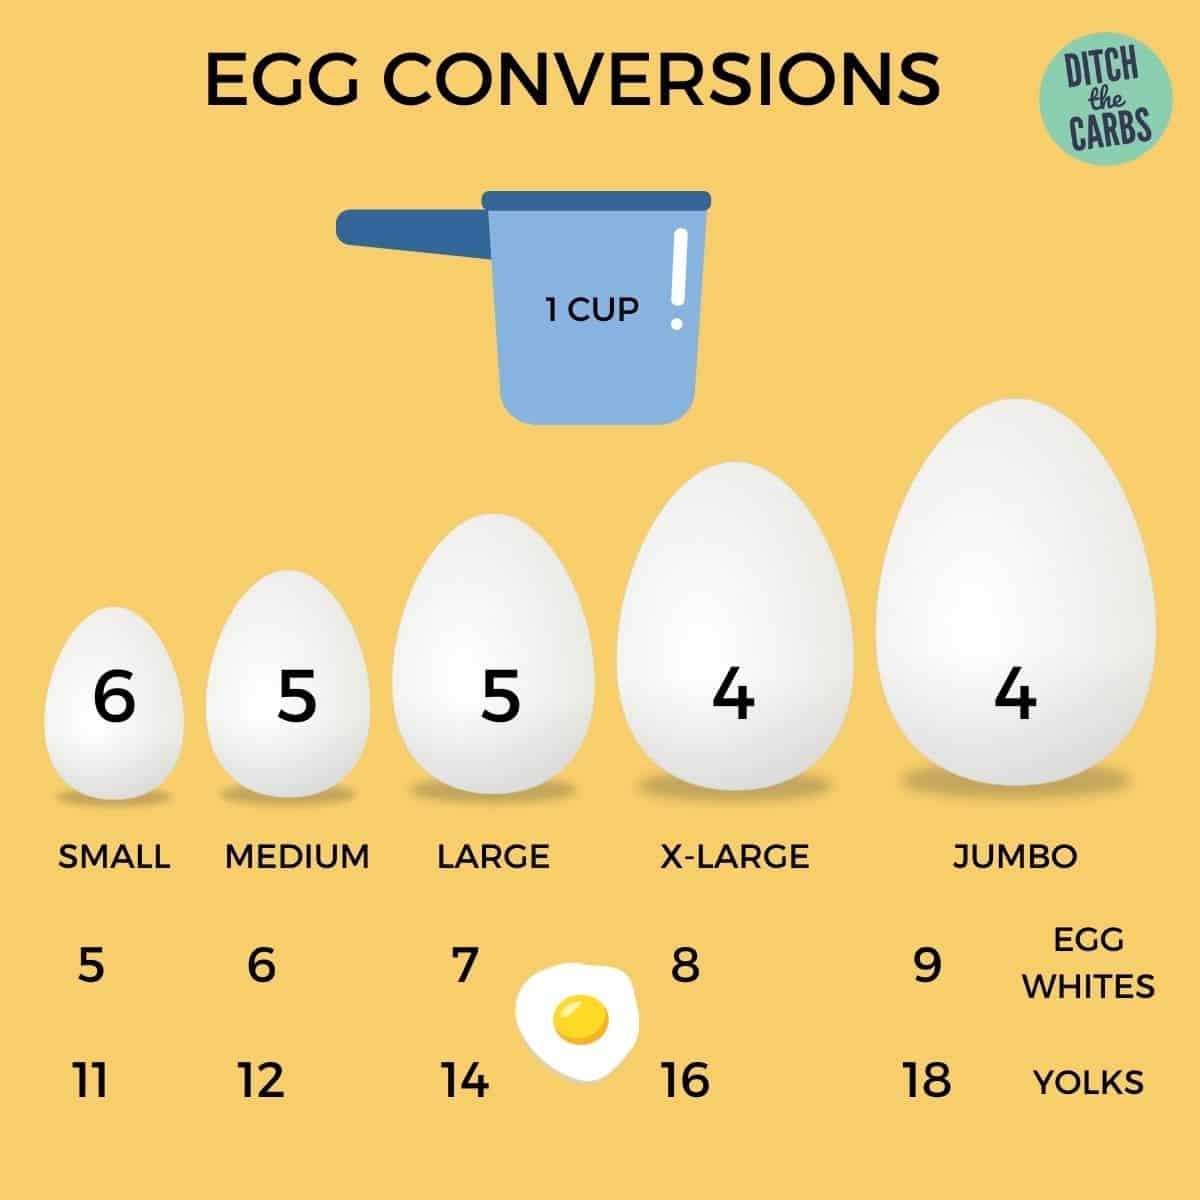 egg conversion charts per cup of eggs